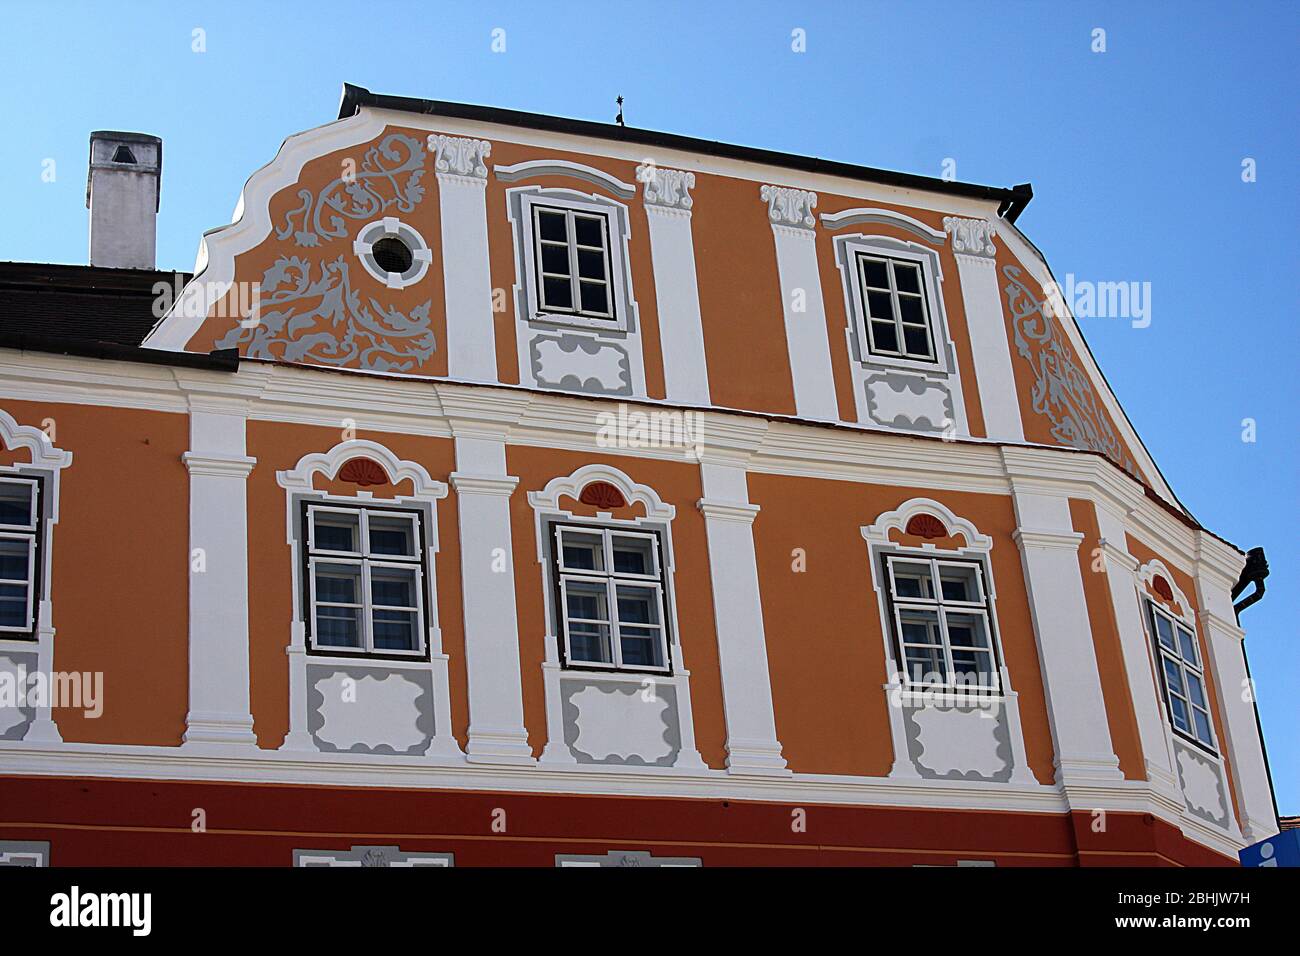 Sibiu, Roumanie. Maison du Luxembourg (Casa Luxembourg) Hôtel, dans un bâtiment médiéval avec une façade décorée avec détail du XVIIe siècle. Banque D'Images